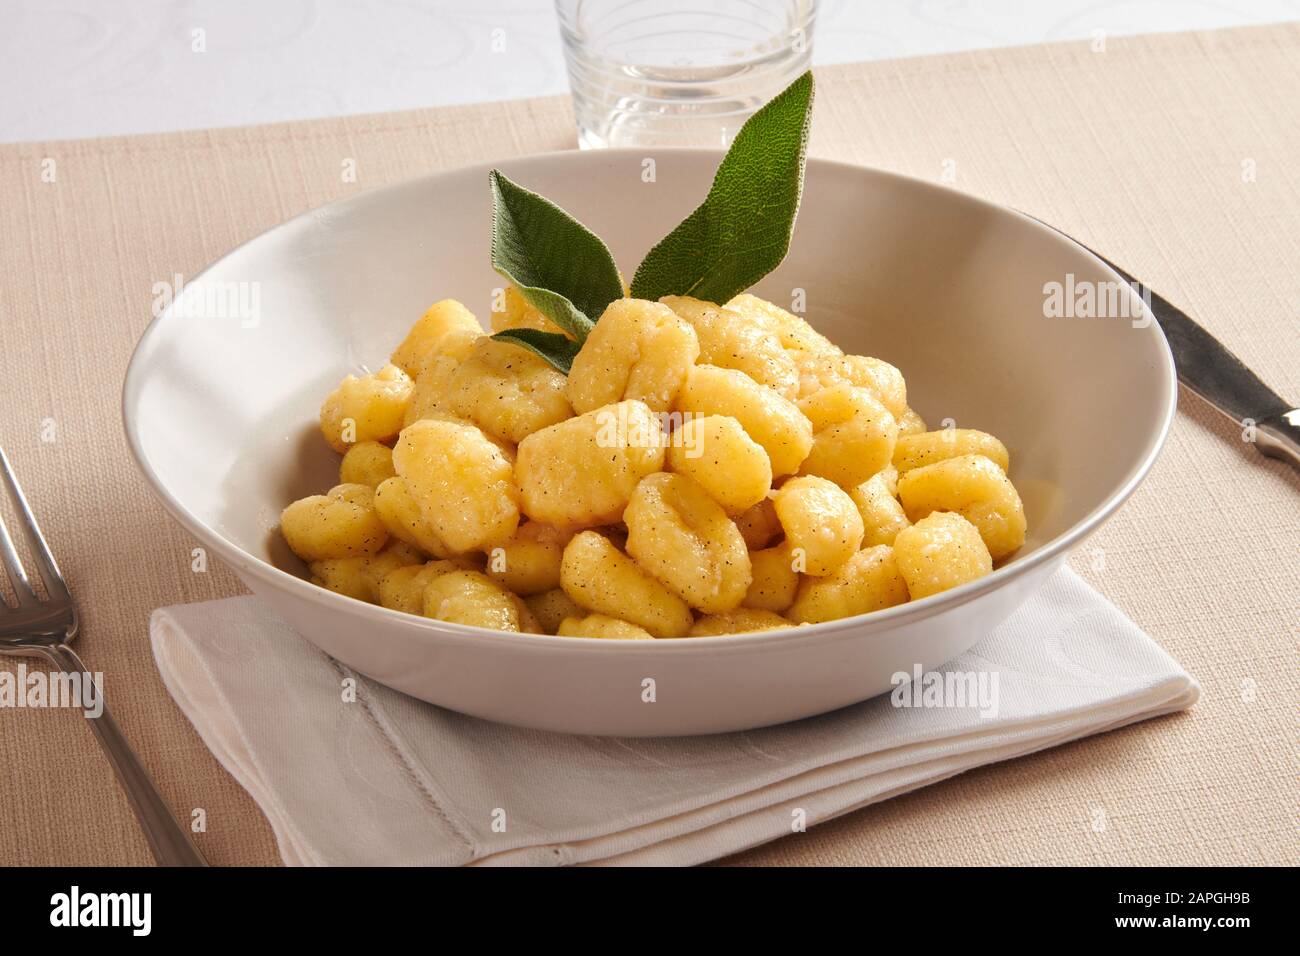 Plat régional traditionnel de pâtes gnocchi au beurre et au salvia de la région de Vénétie en Italie servi à table sur une serviette pliée Banque D'Images